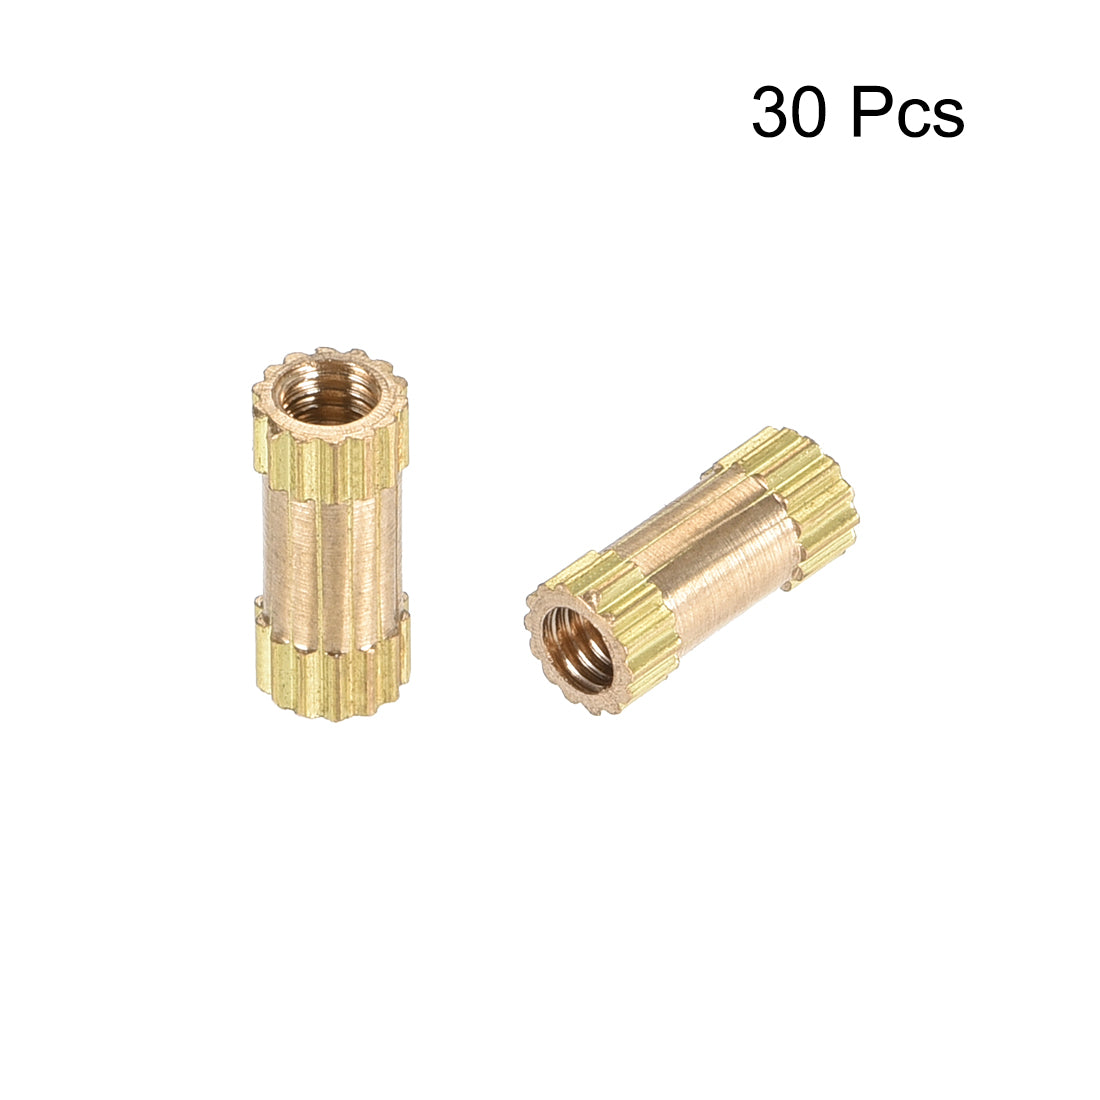 uxcell Uxcell Knurled Insert Nuts, M2.5 x 8mm(L) x 3.5mm(OD) Female Thread Brass Embedment Assortment Kit, 30 Pcs